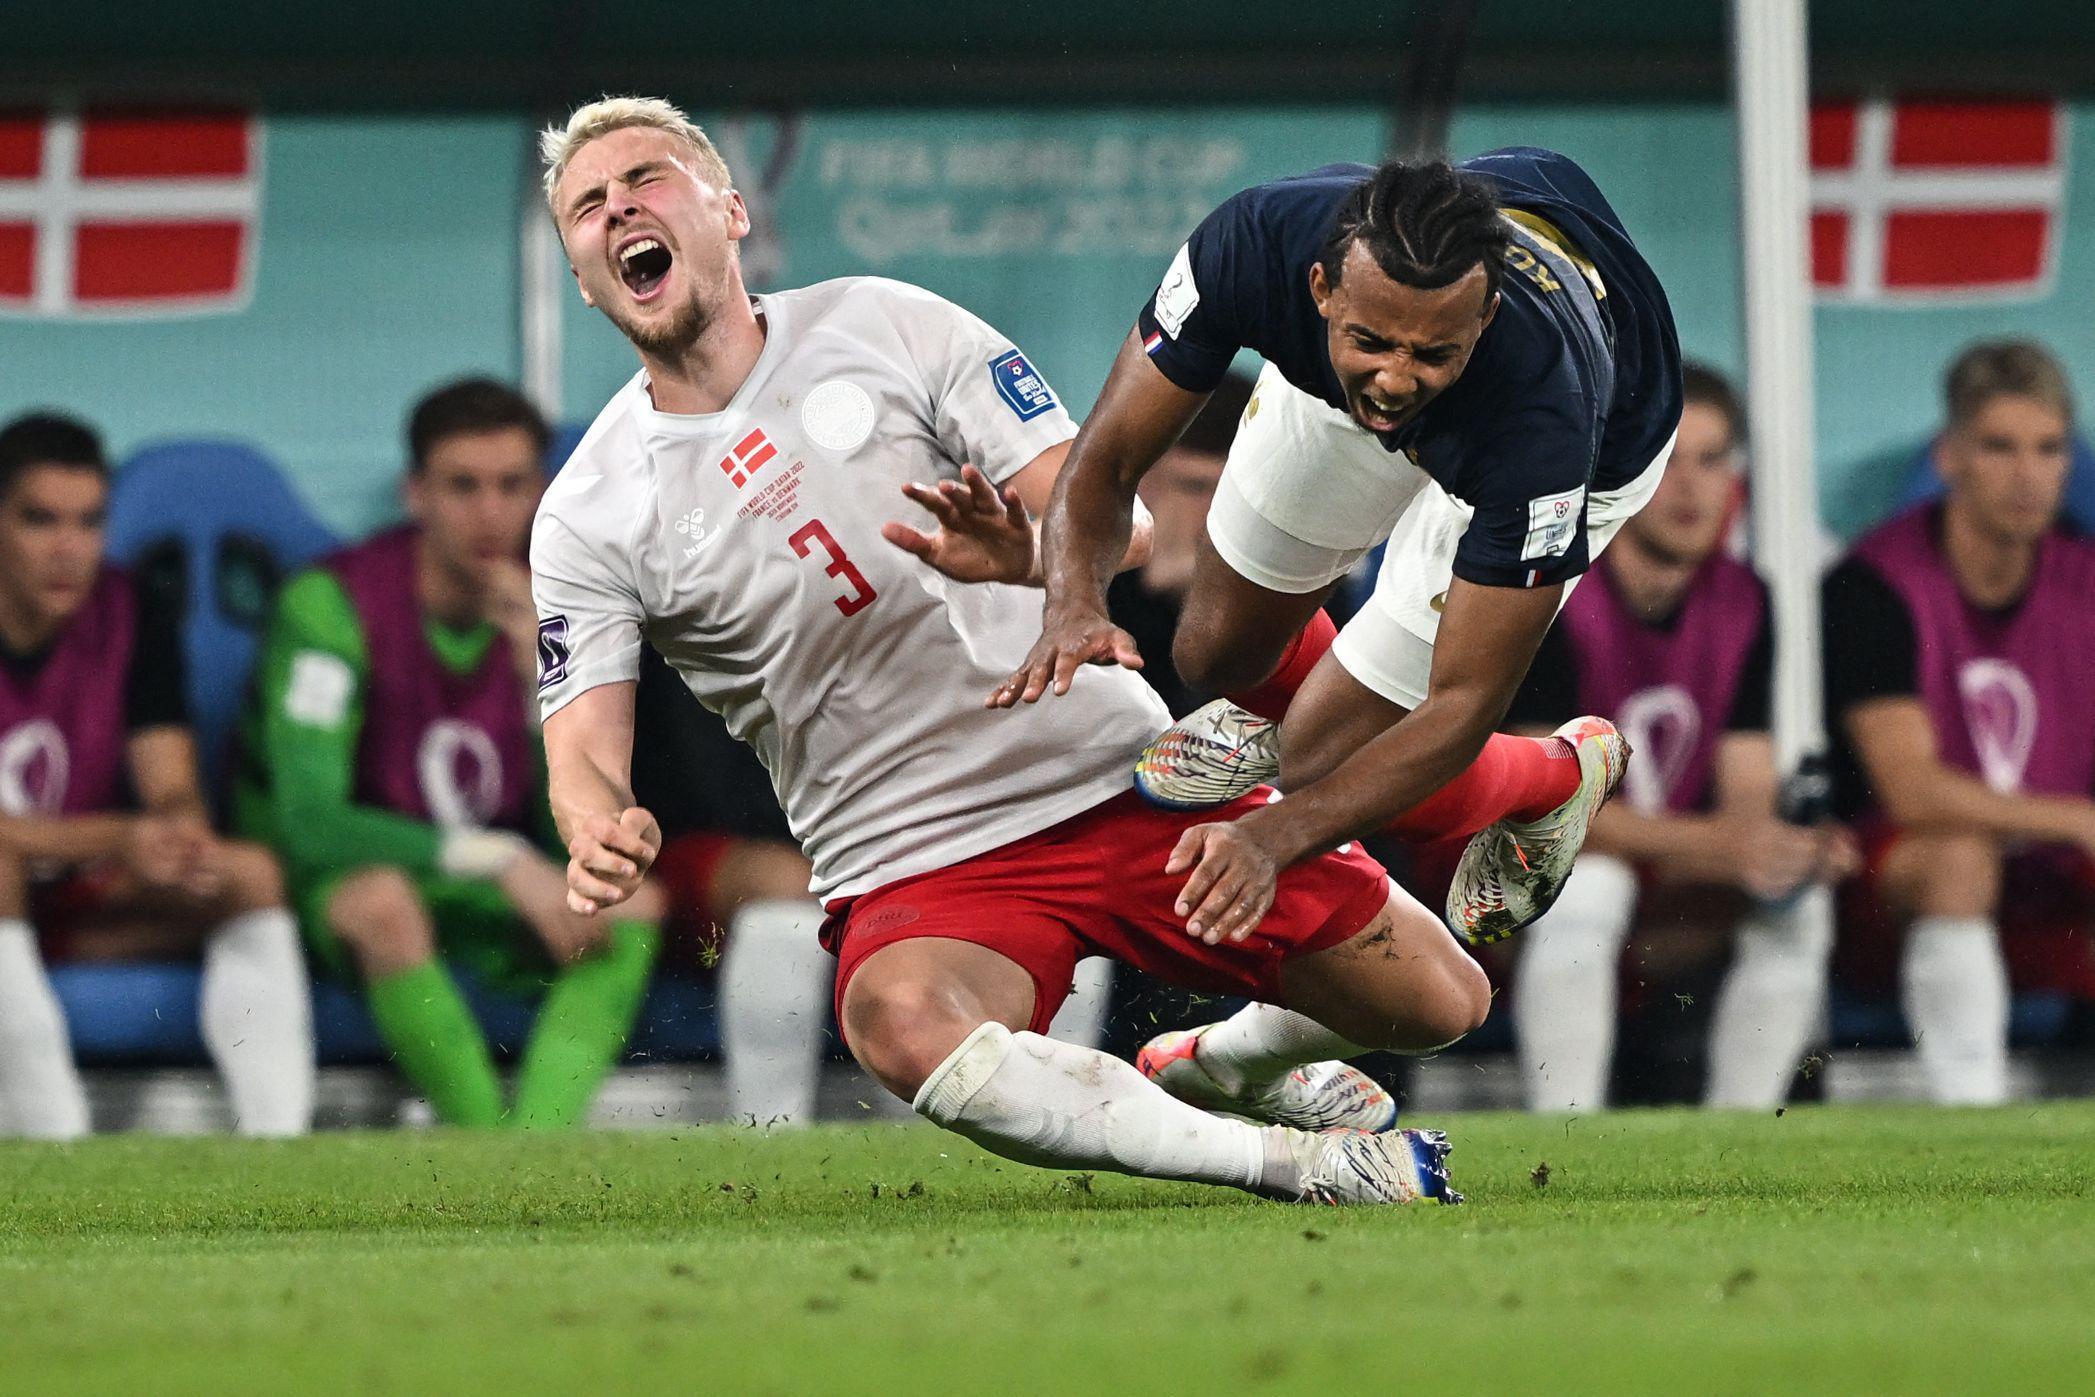 (ÖZET) Fransa - Danimarka maç sonucu: 2-1 (2022 Dünya Kupası D Grubu) | Mbappeyi durduramadılar